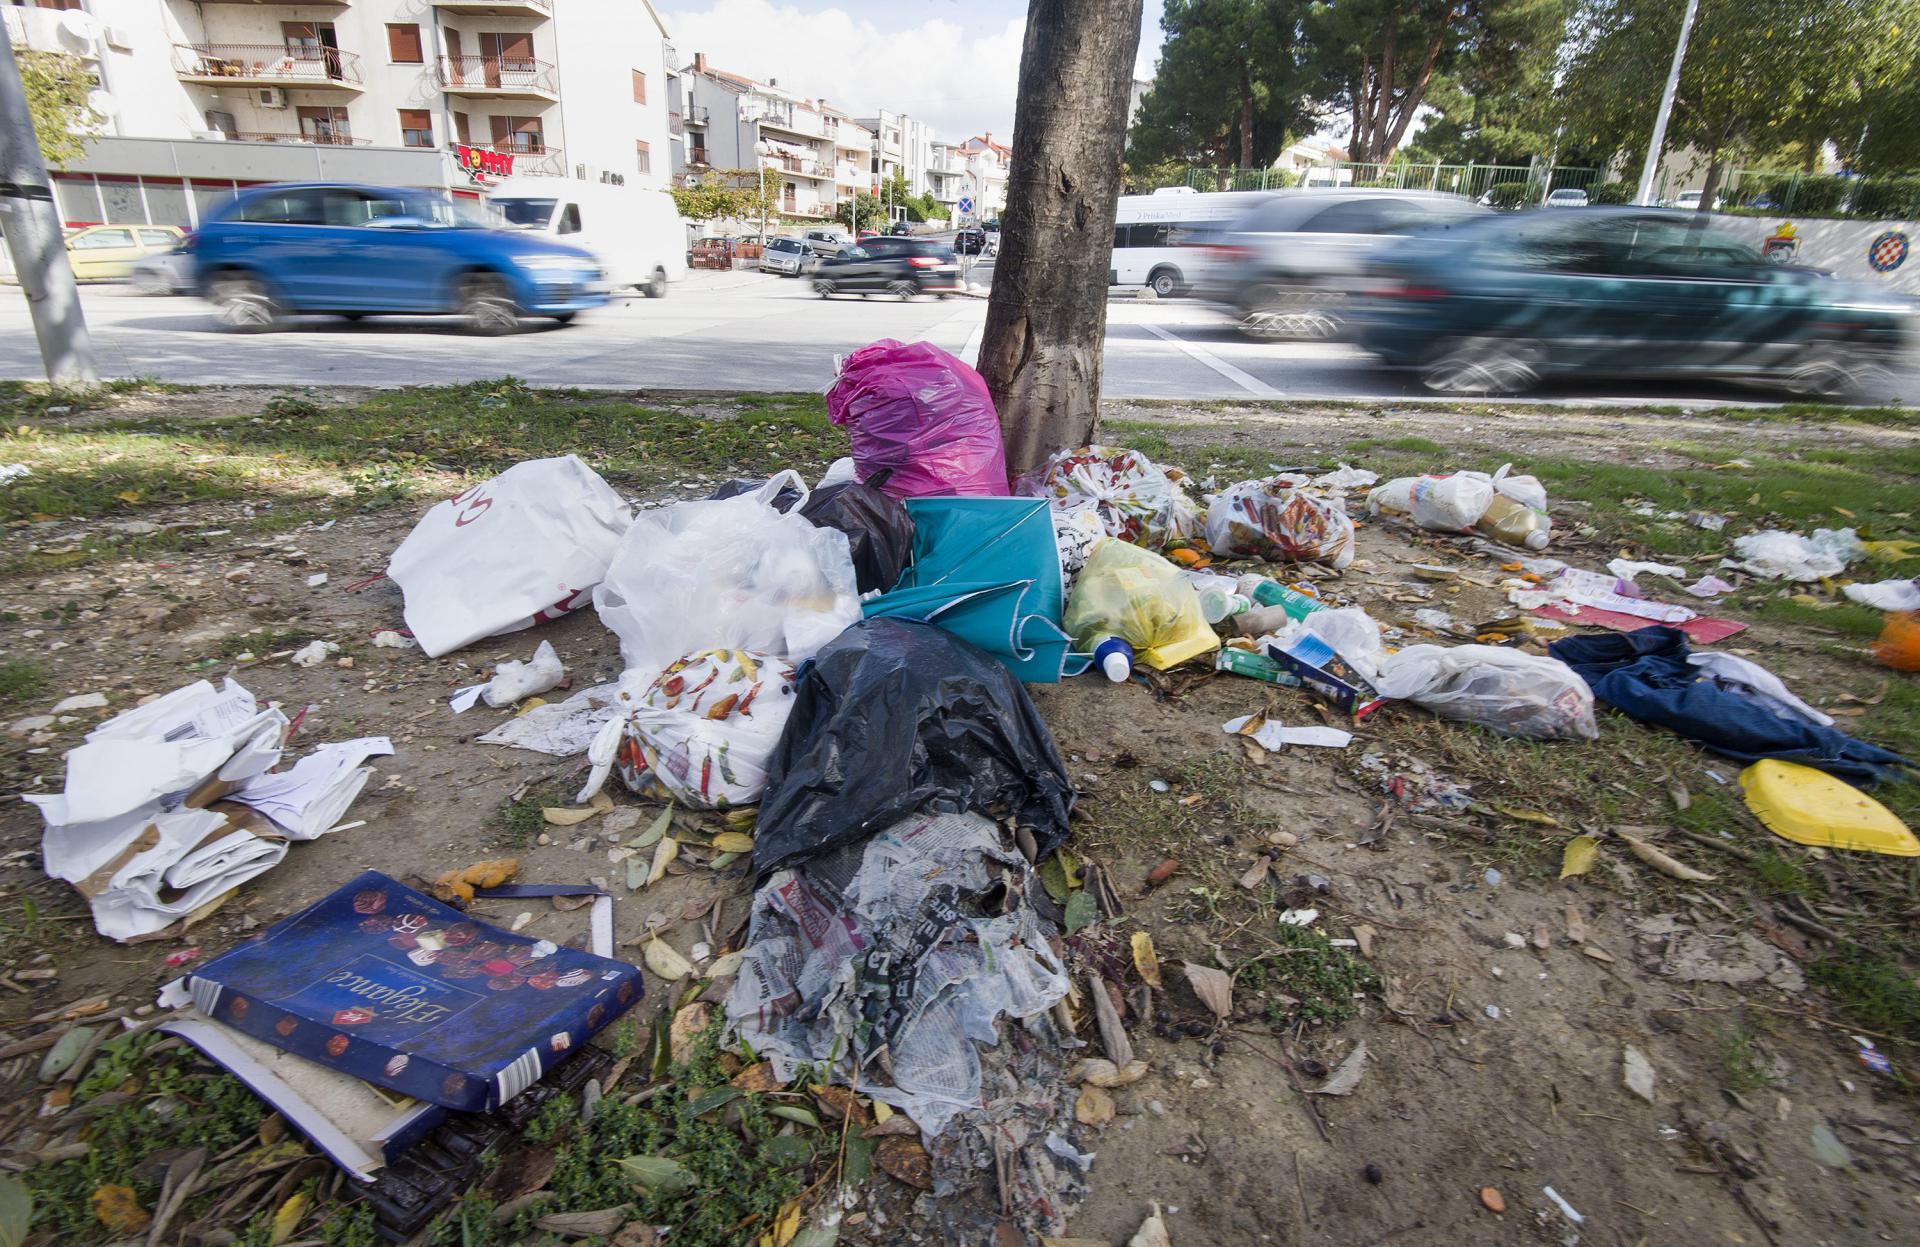 Splićani jure ili mirno prolaze uz gomile otpada na ulicama, više i ne primjećuju u kojoj šporkici žive